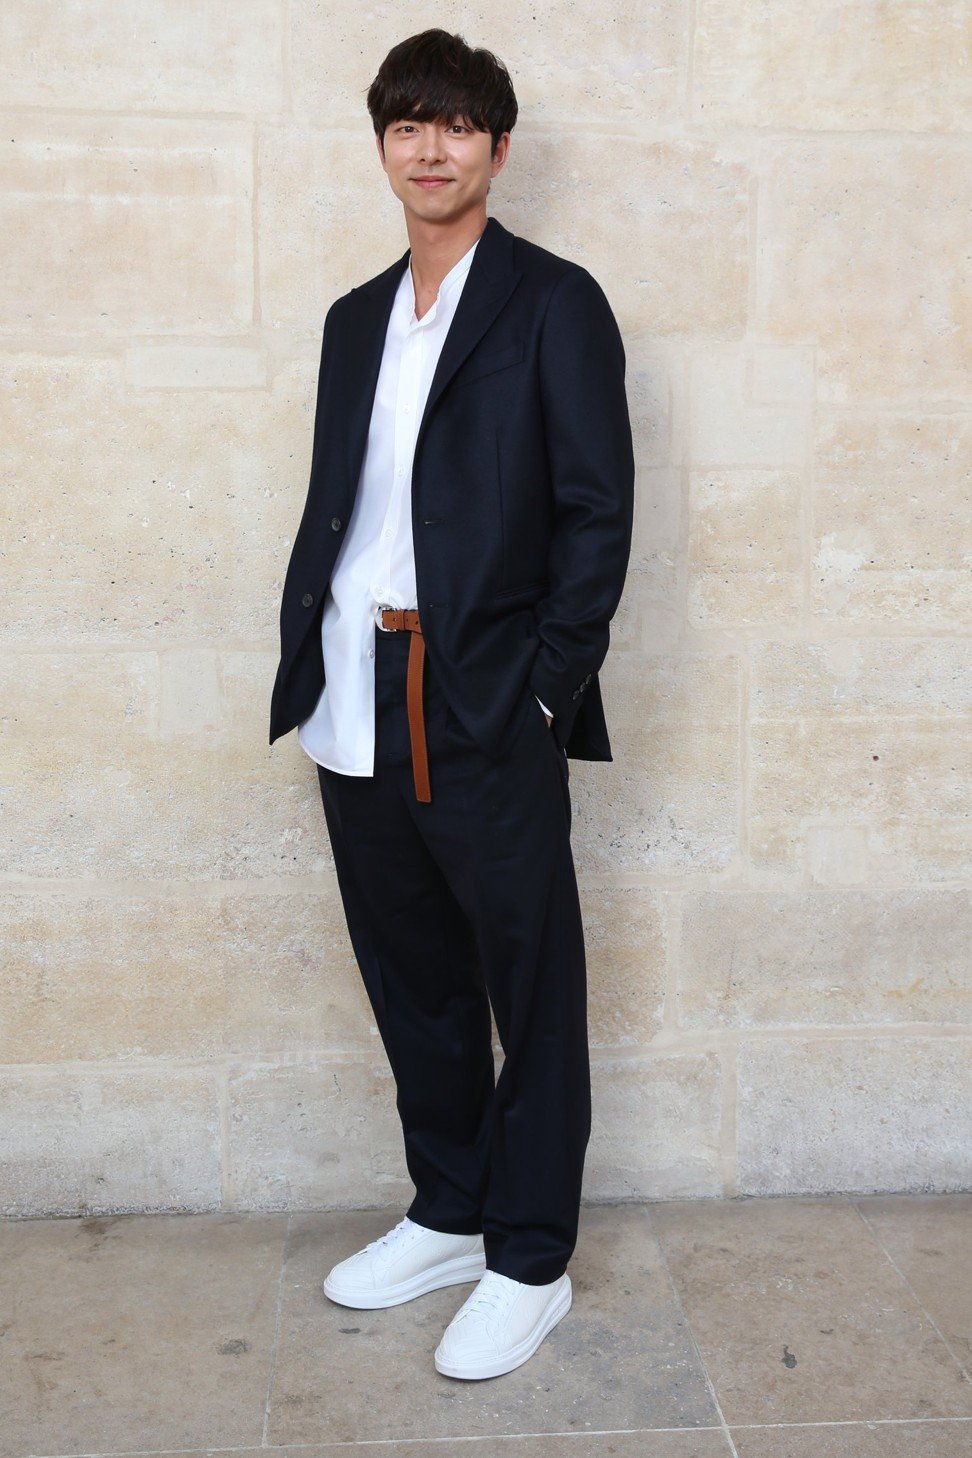 Goblin 도깨비 Thailand fans - 170622 Gong Yoo at Louis Vuitton Men's Fashion  Show SS18 #LVmenss18 / Paris cr. esquiresg